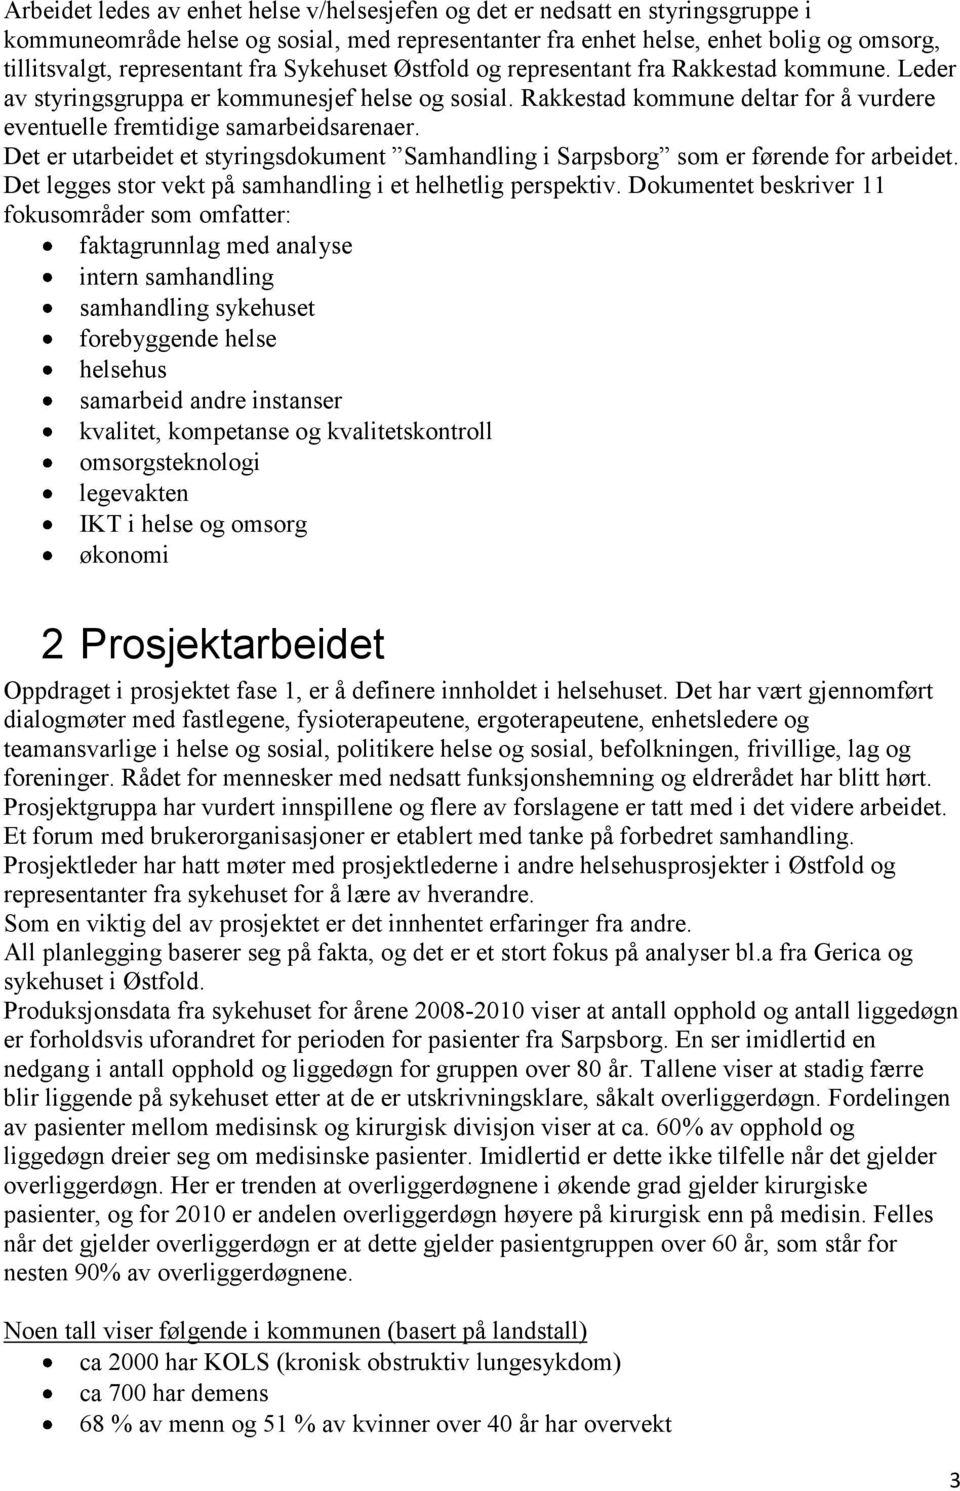 Det er utarbeidet et styringsdokument Samhandling i Sarpsborg som er førende for arbeidet. Det legges stor vekt på samhandling i et helhetlig perspektiv.